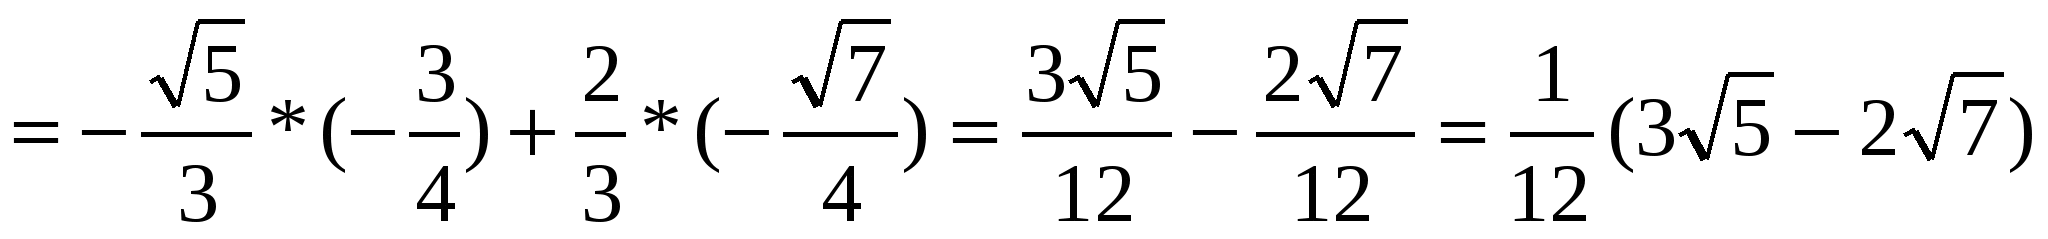 Қосу формулаларына есептер шығару 9 сынып алгебра